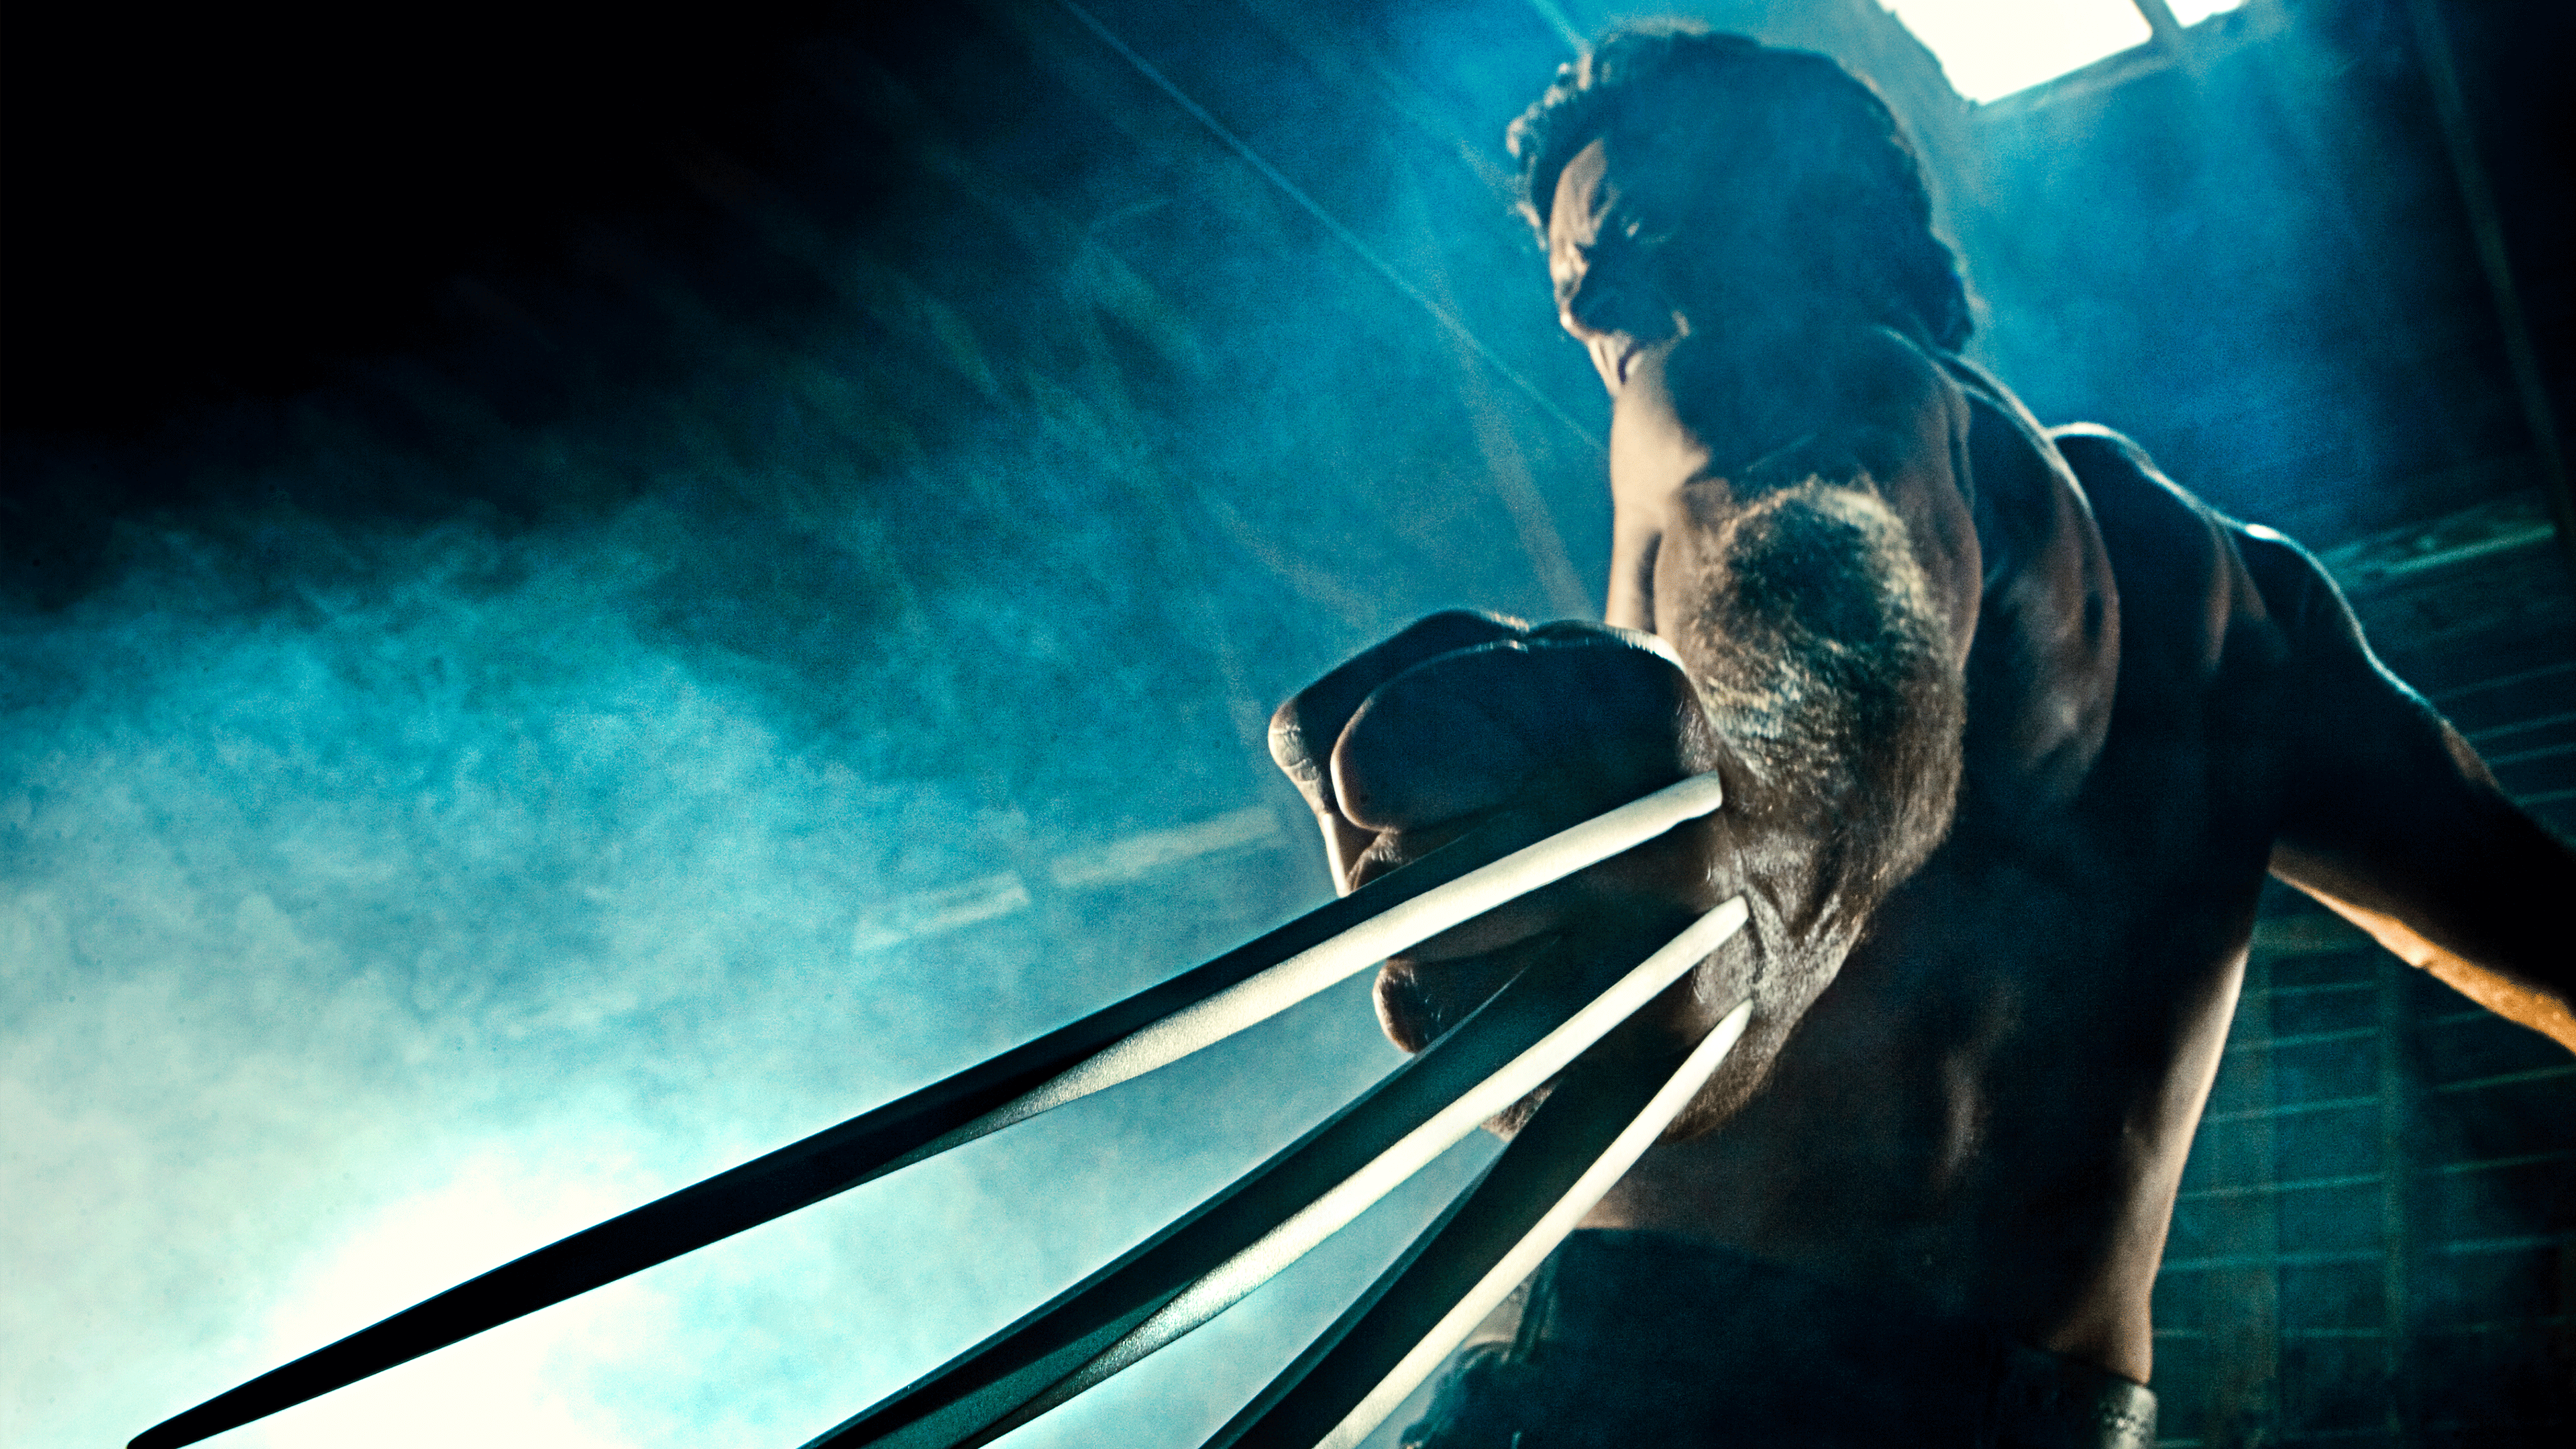 X-Men: Wolverine